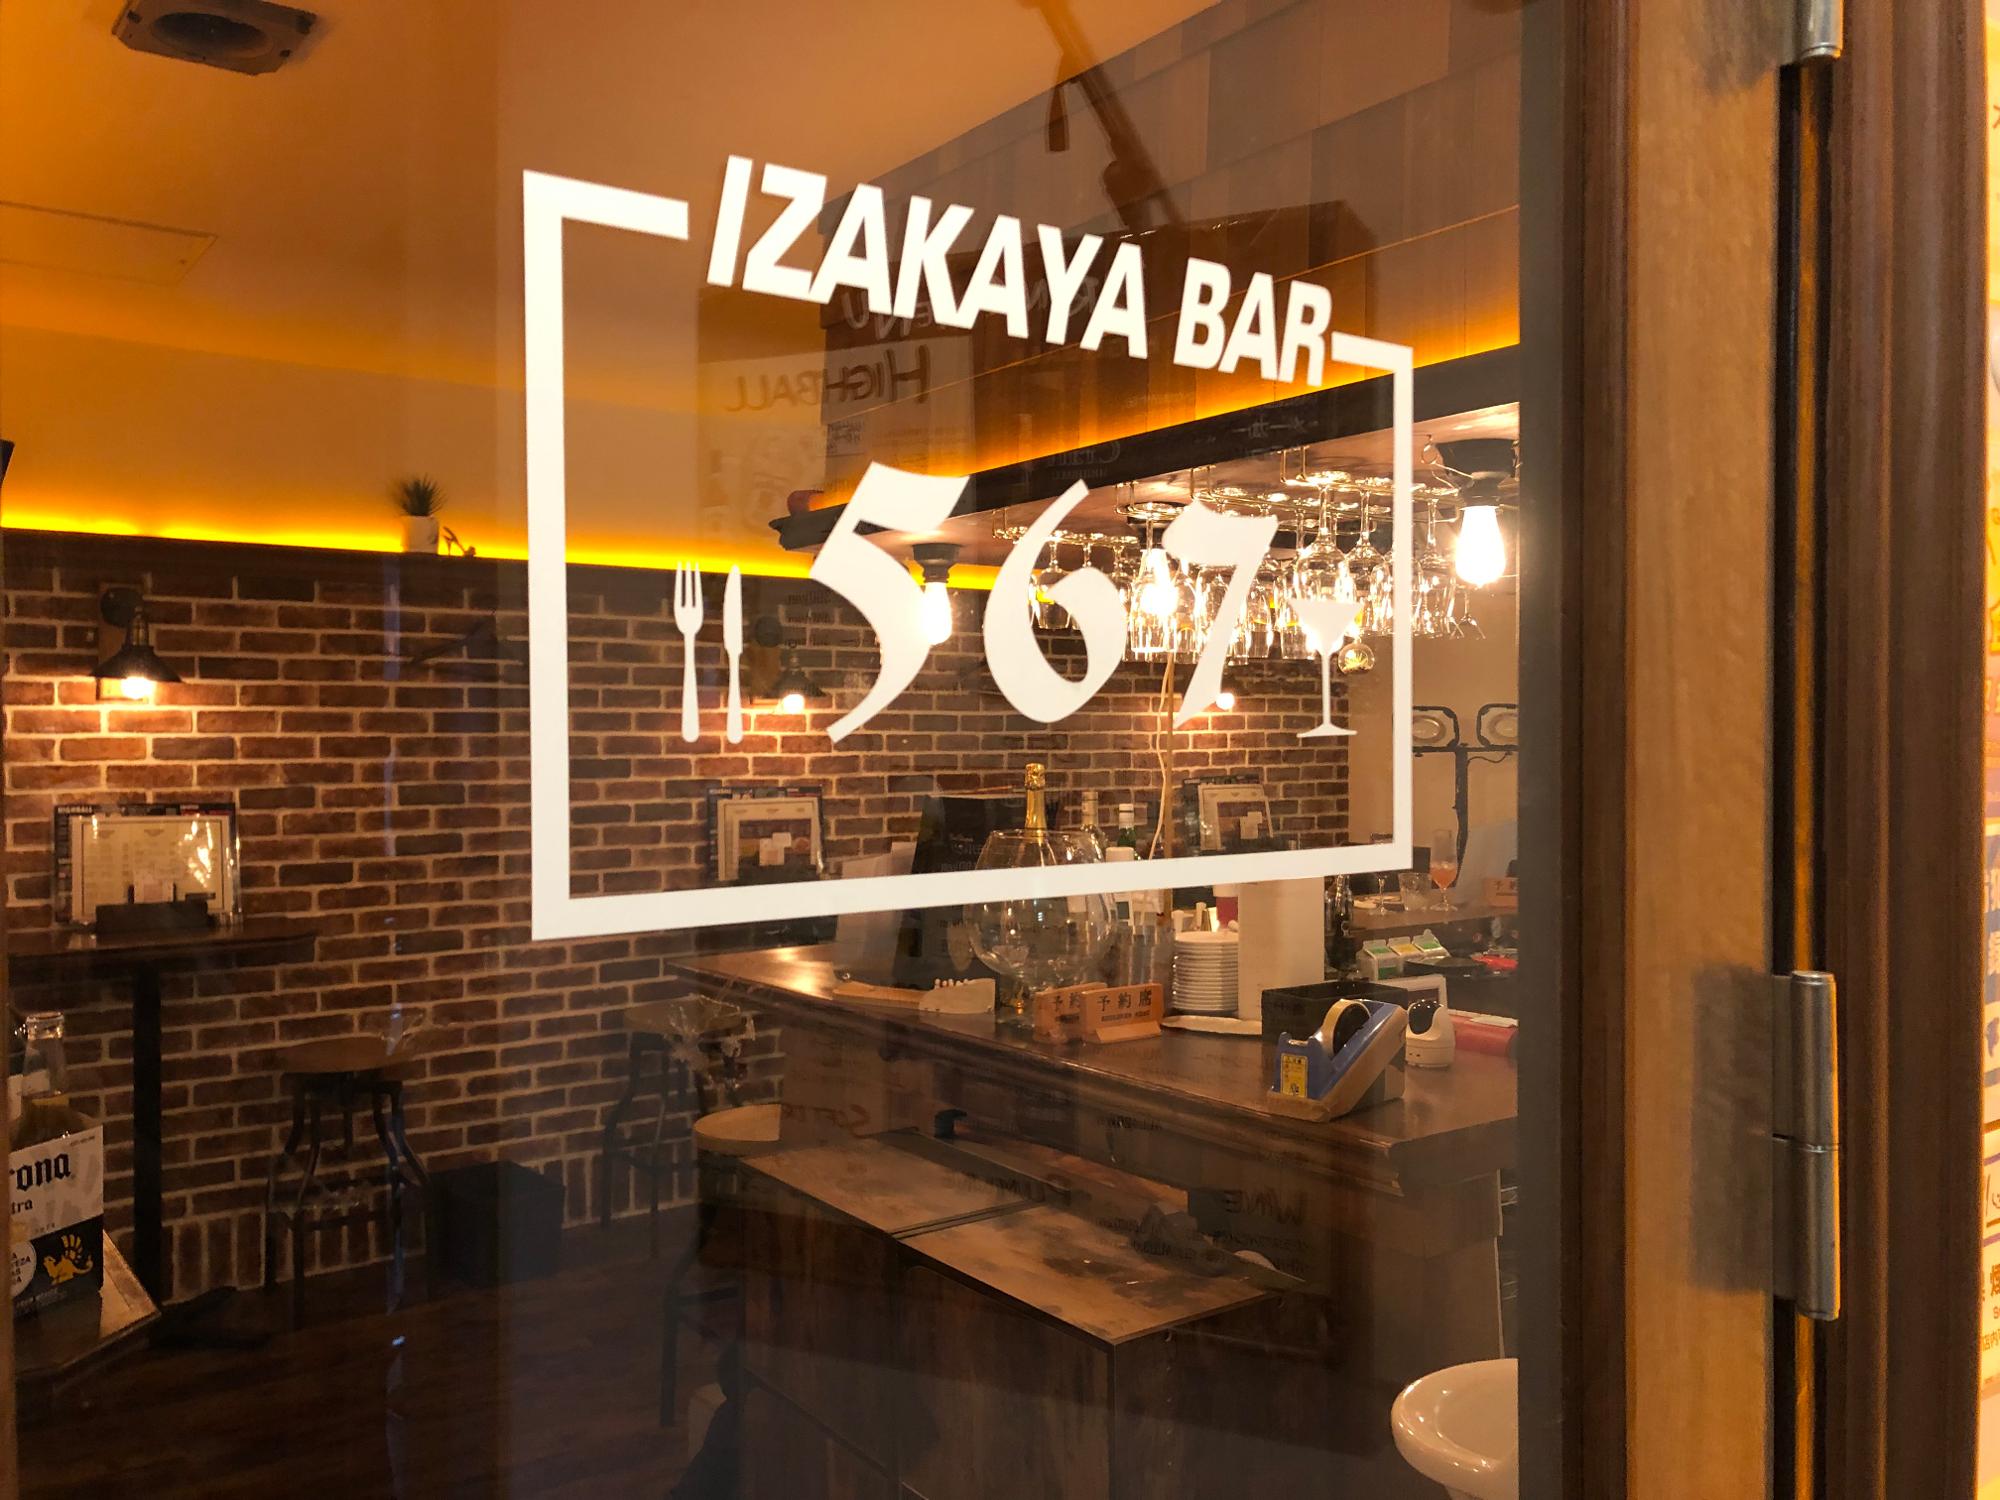 藤沢市 駅から567歩 リーズナブルで美味しい料理とお酒を提供する隠れ家的ダイニングバー Yosshii Yahoo Japan クリエイターズプログラム